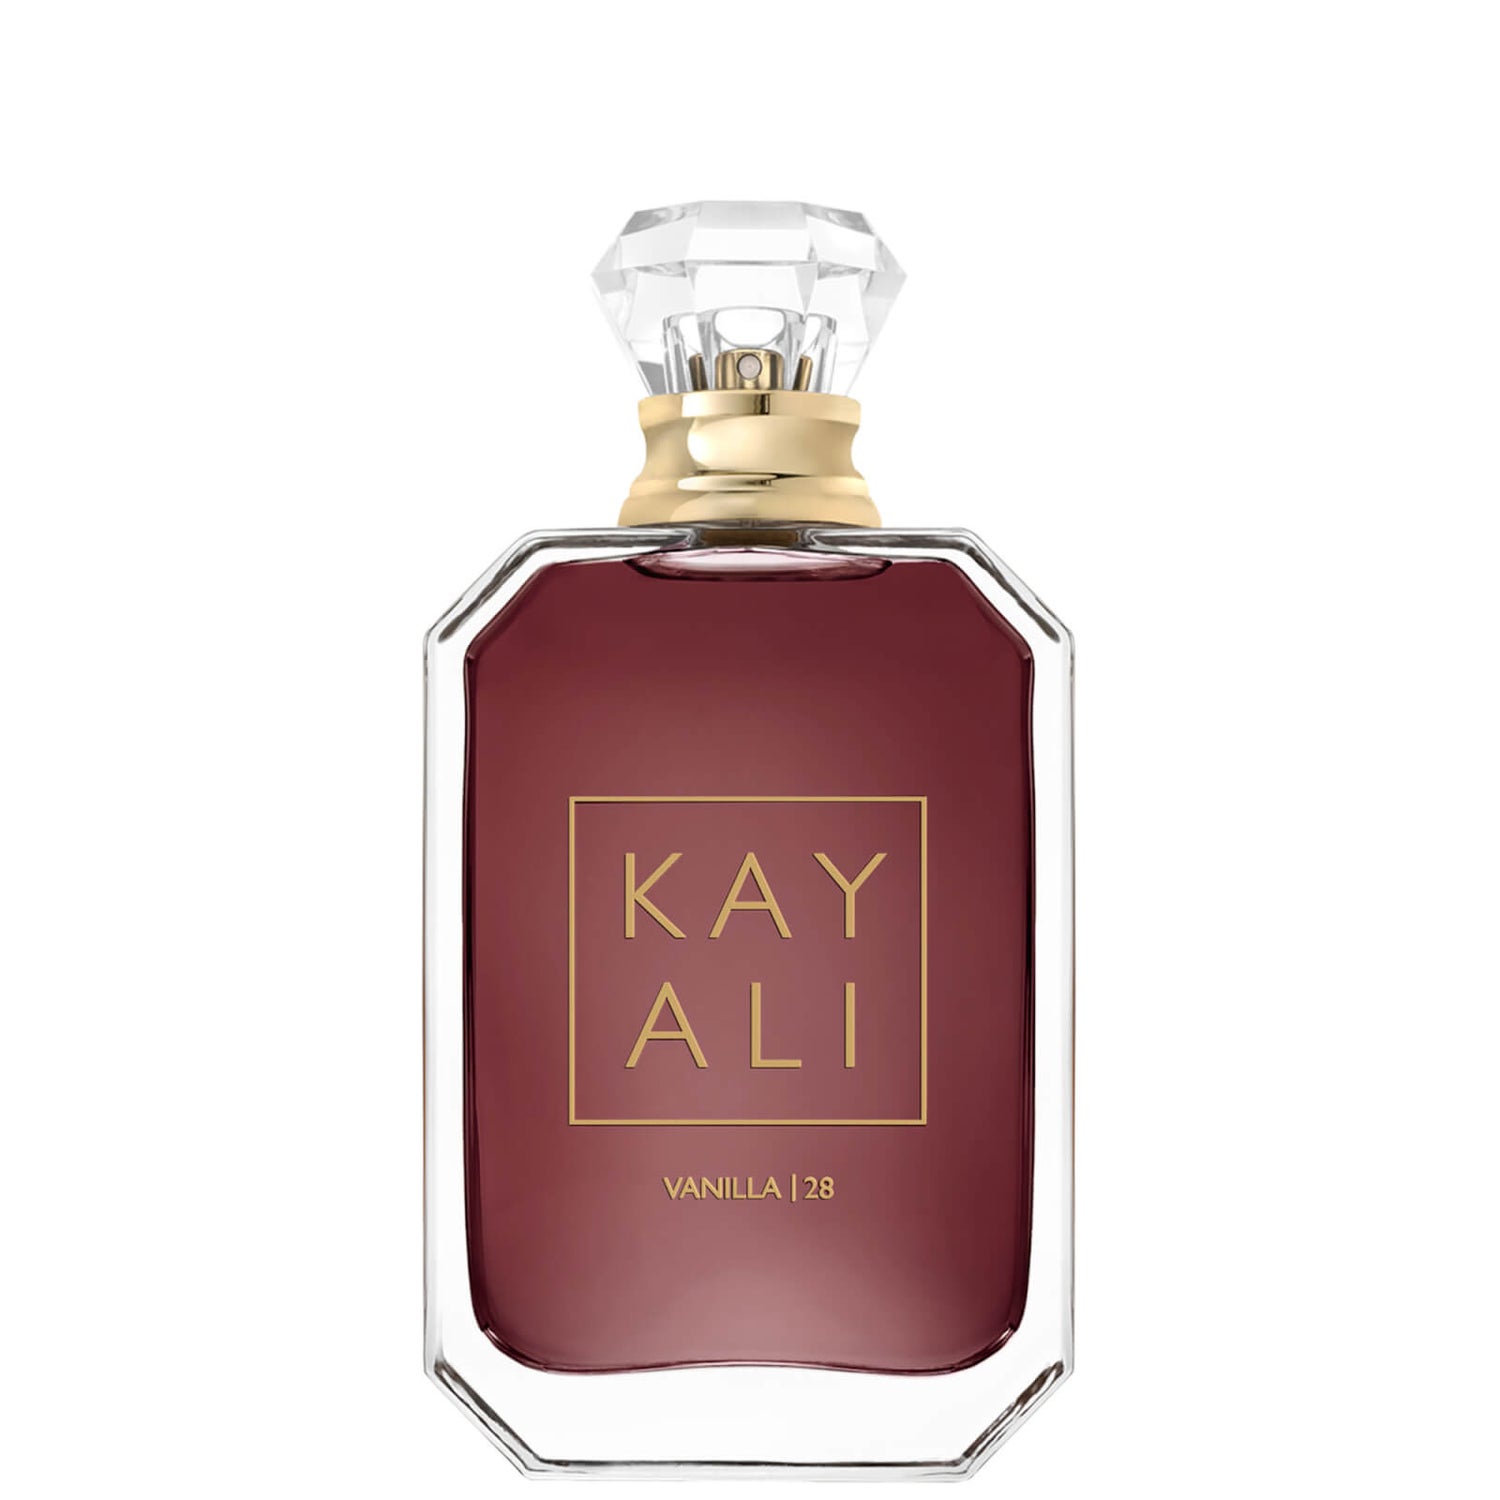 KAYALI Vanilla 28 Eau de Parfum (Various Sizes) | Cult Beauty